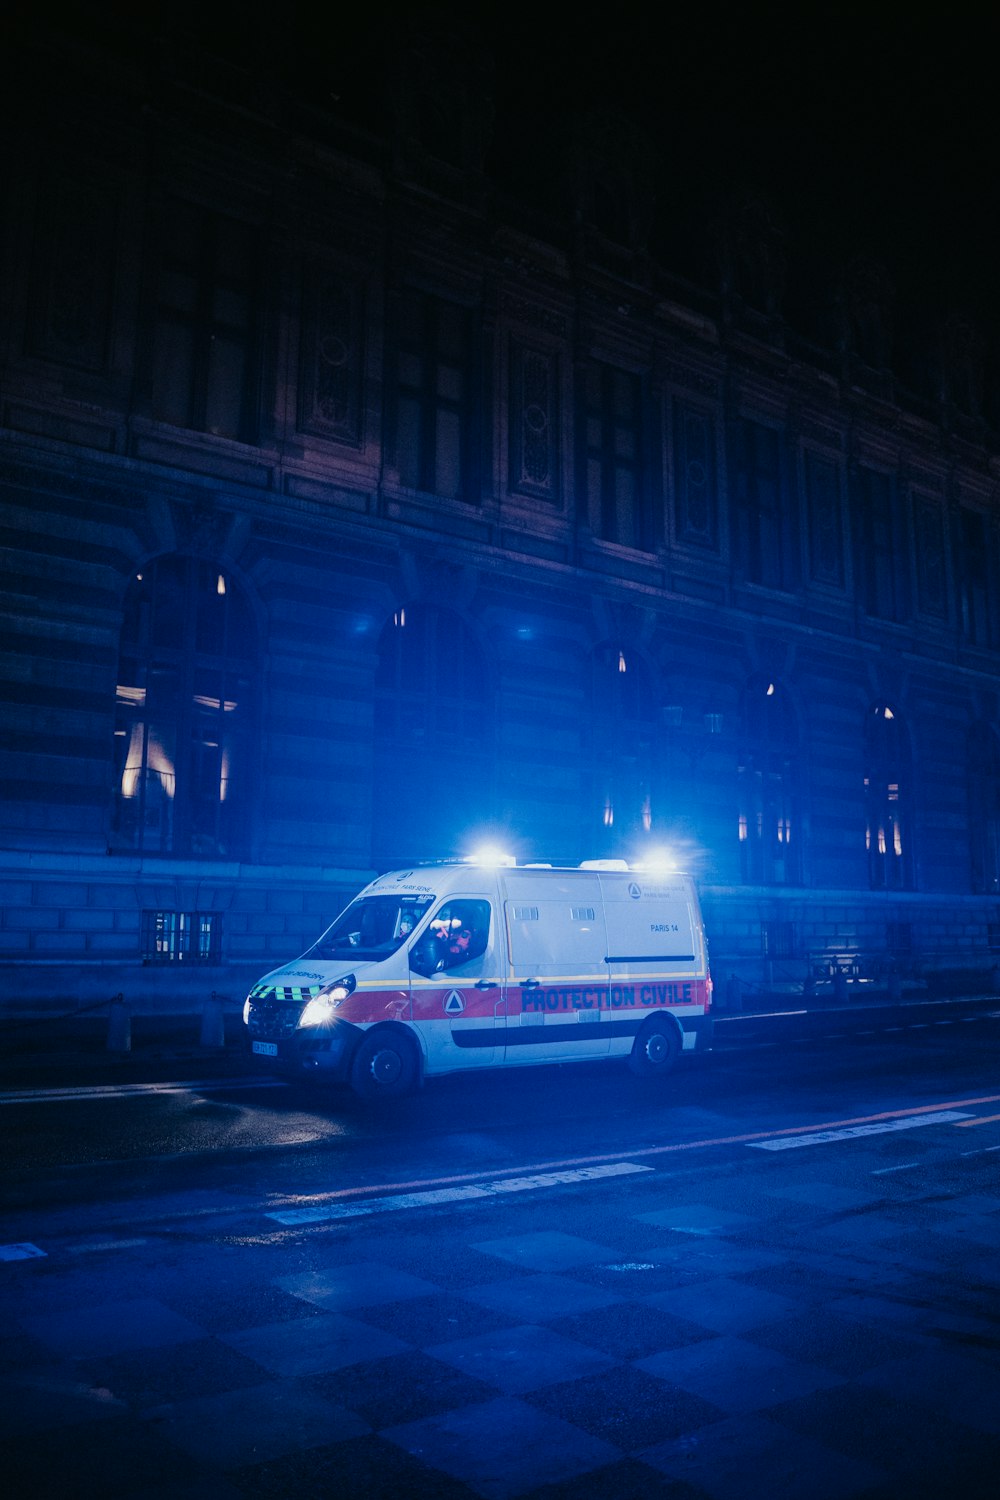 Ein Krankenwagen, der nachts am Straßenrand geparkt ist